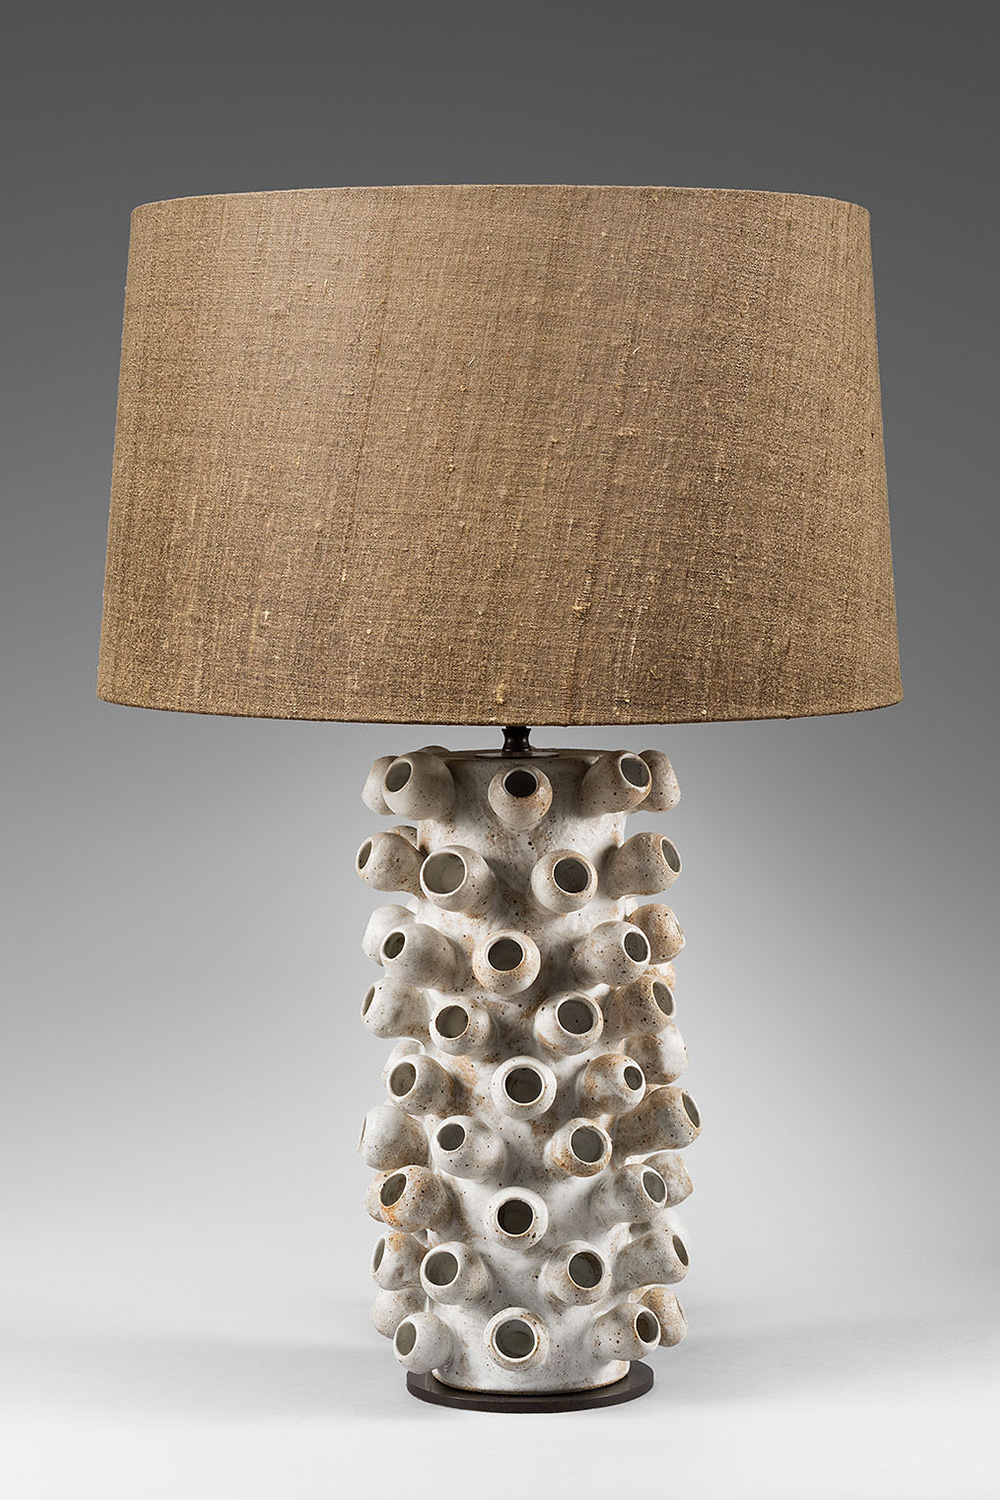 Stoneware “Tentacle” lamp